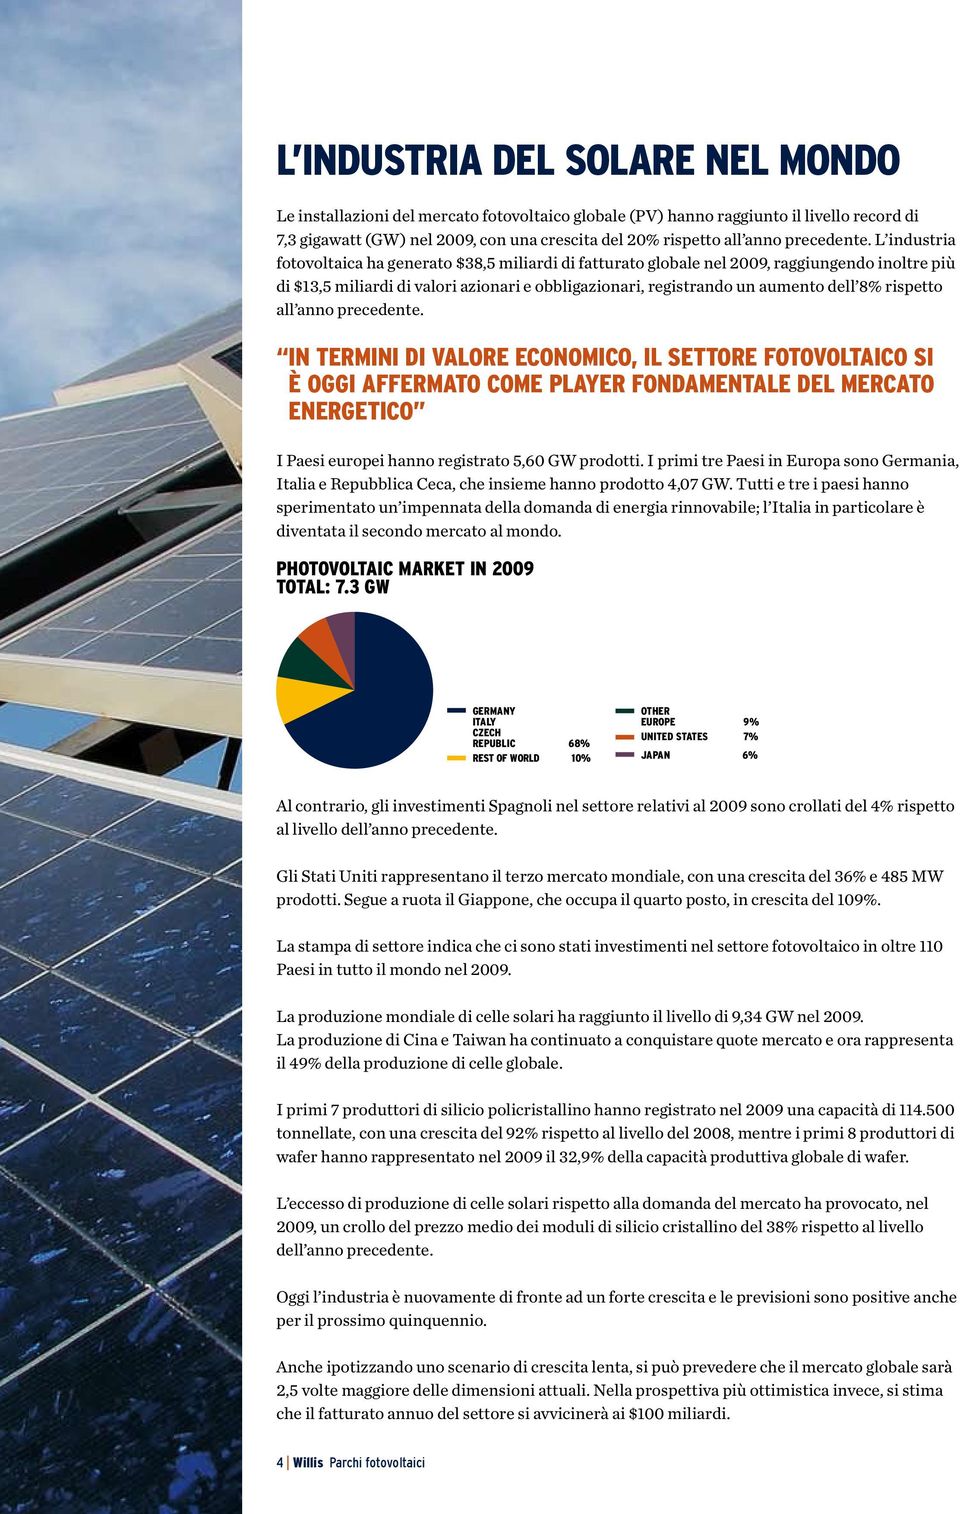 L industria fotovoltaica ha generato $38,5 miliardi di fatturato globale nel 2009, raggiungendo inoltre più di $13,5 miliardi di valori azionari e obbligazionari, registrando un aumento dell 8%